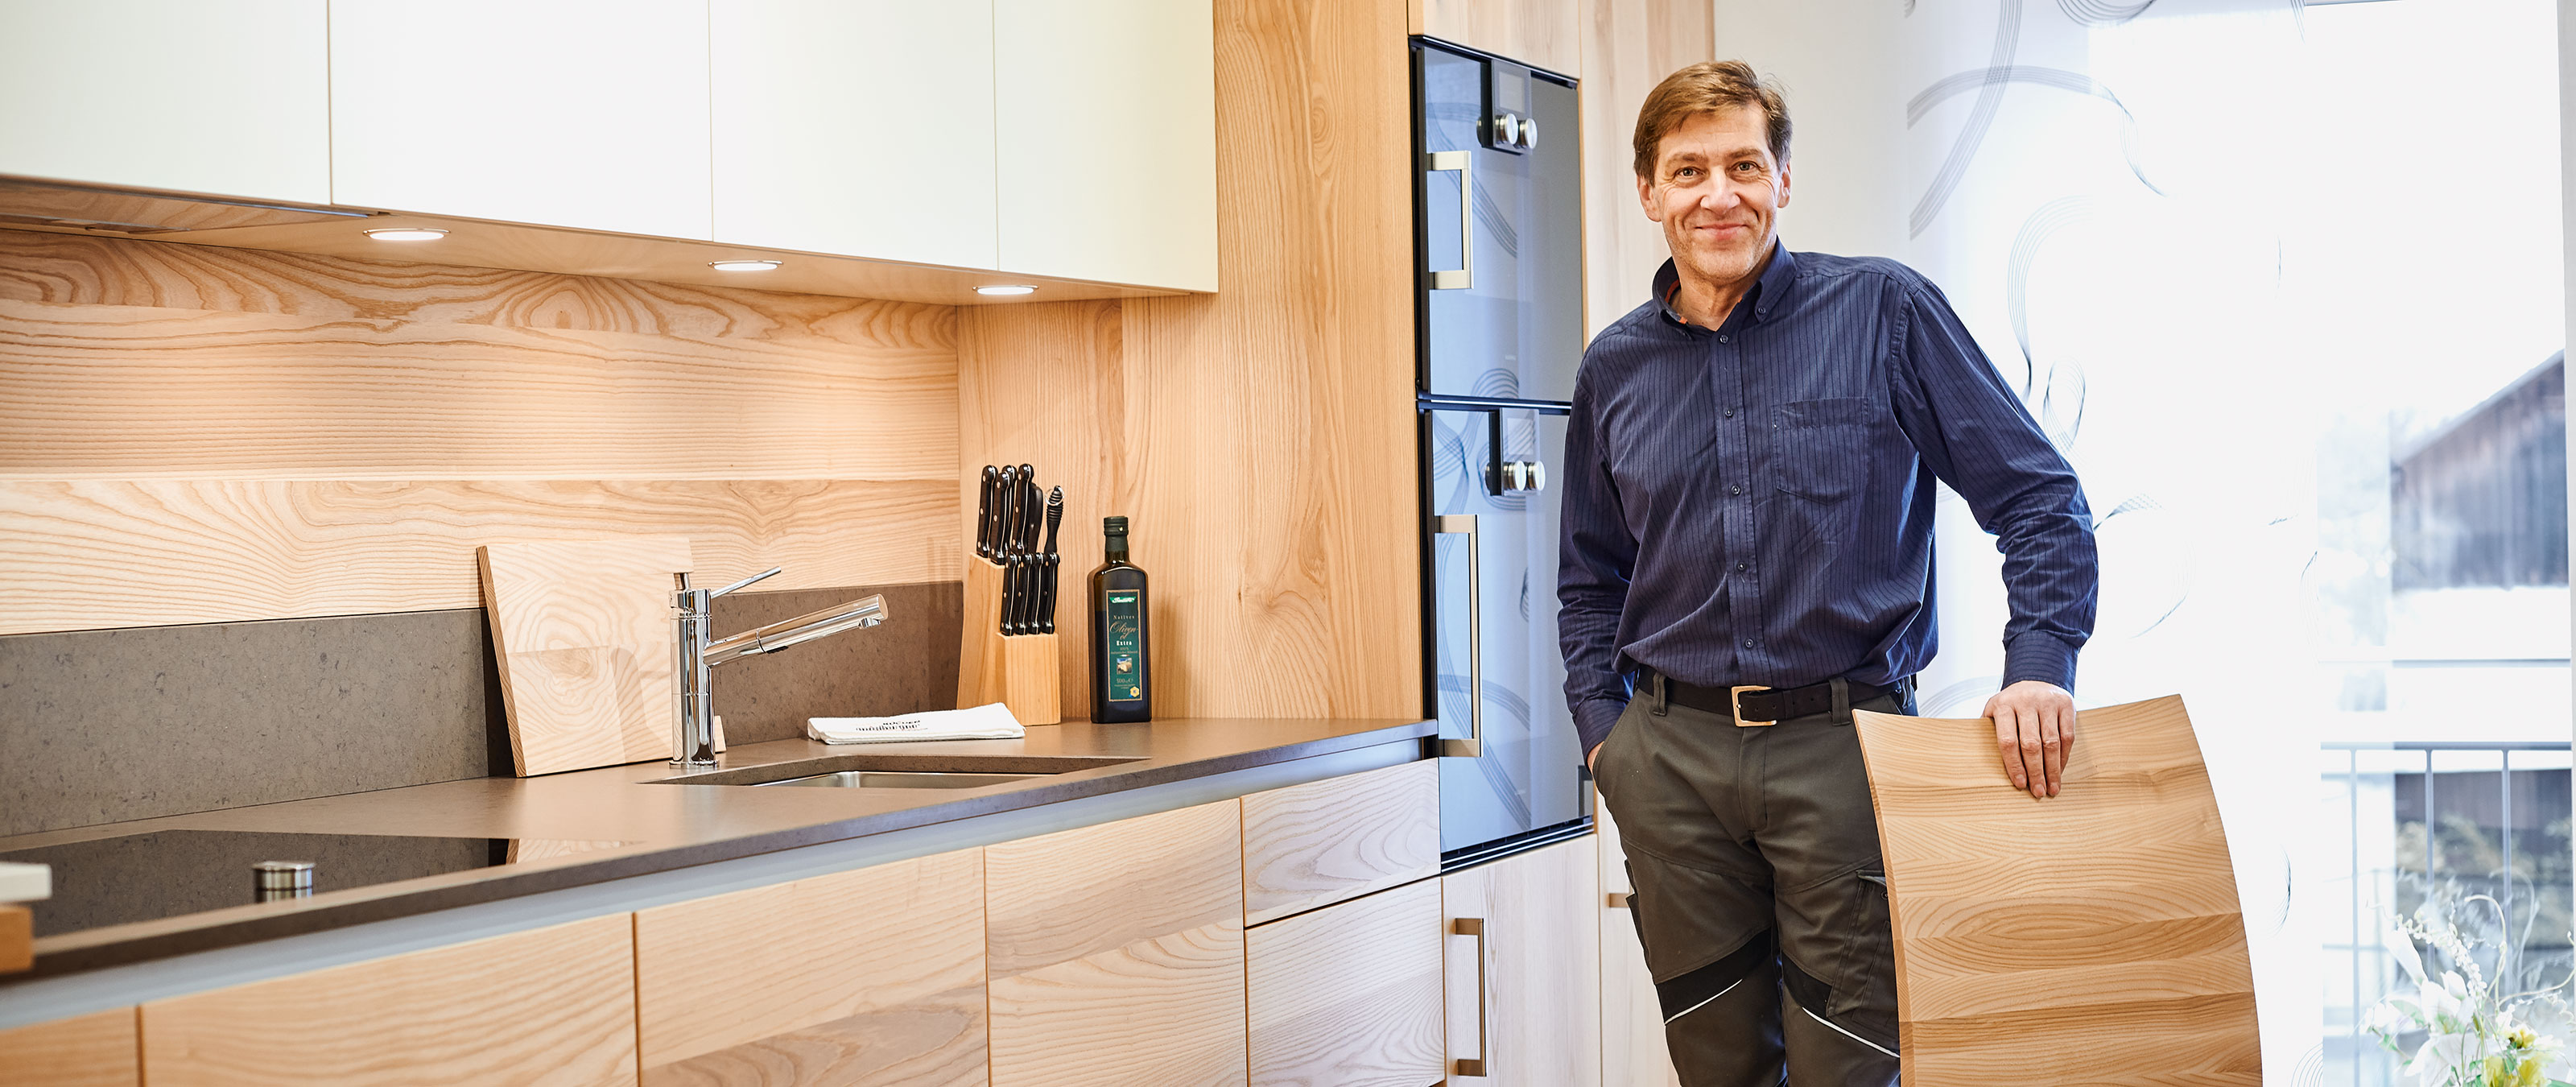 Cozinhas personalizadas: a carpintaria de Martin Geisberger valoriza a qualidade acima de tudo.